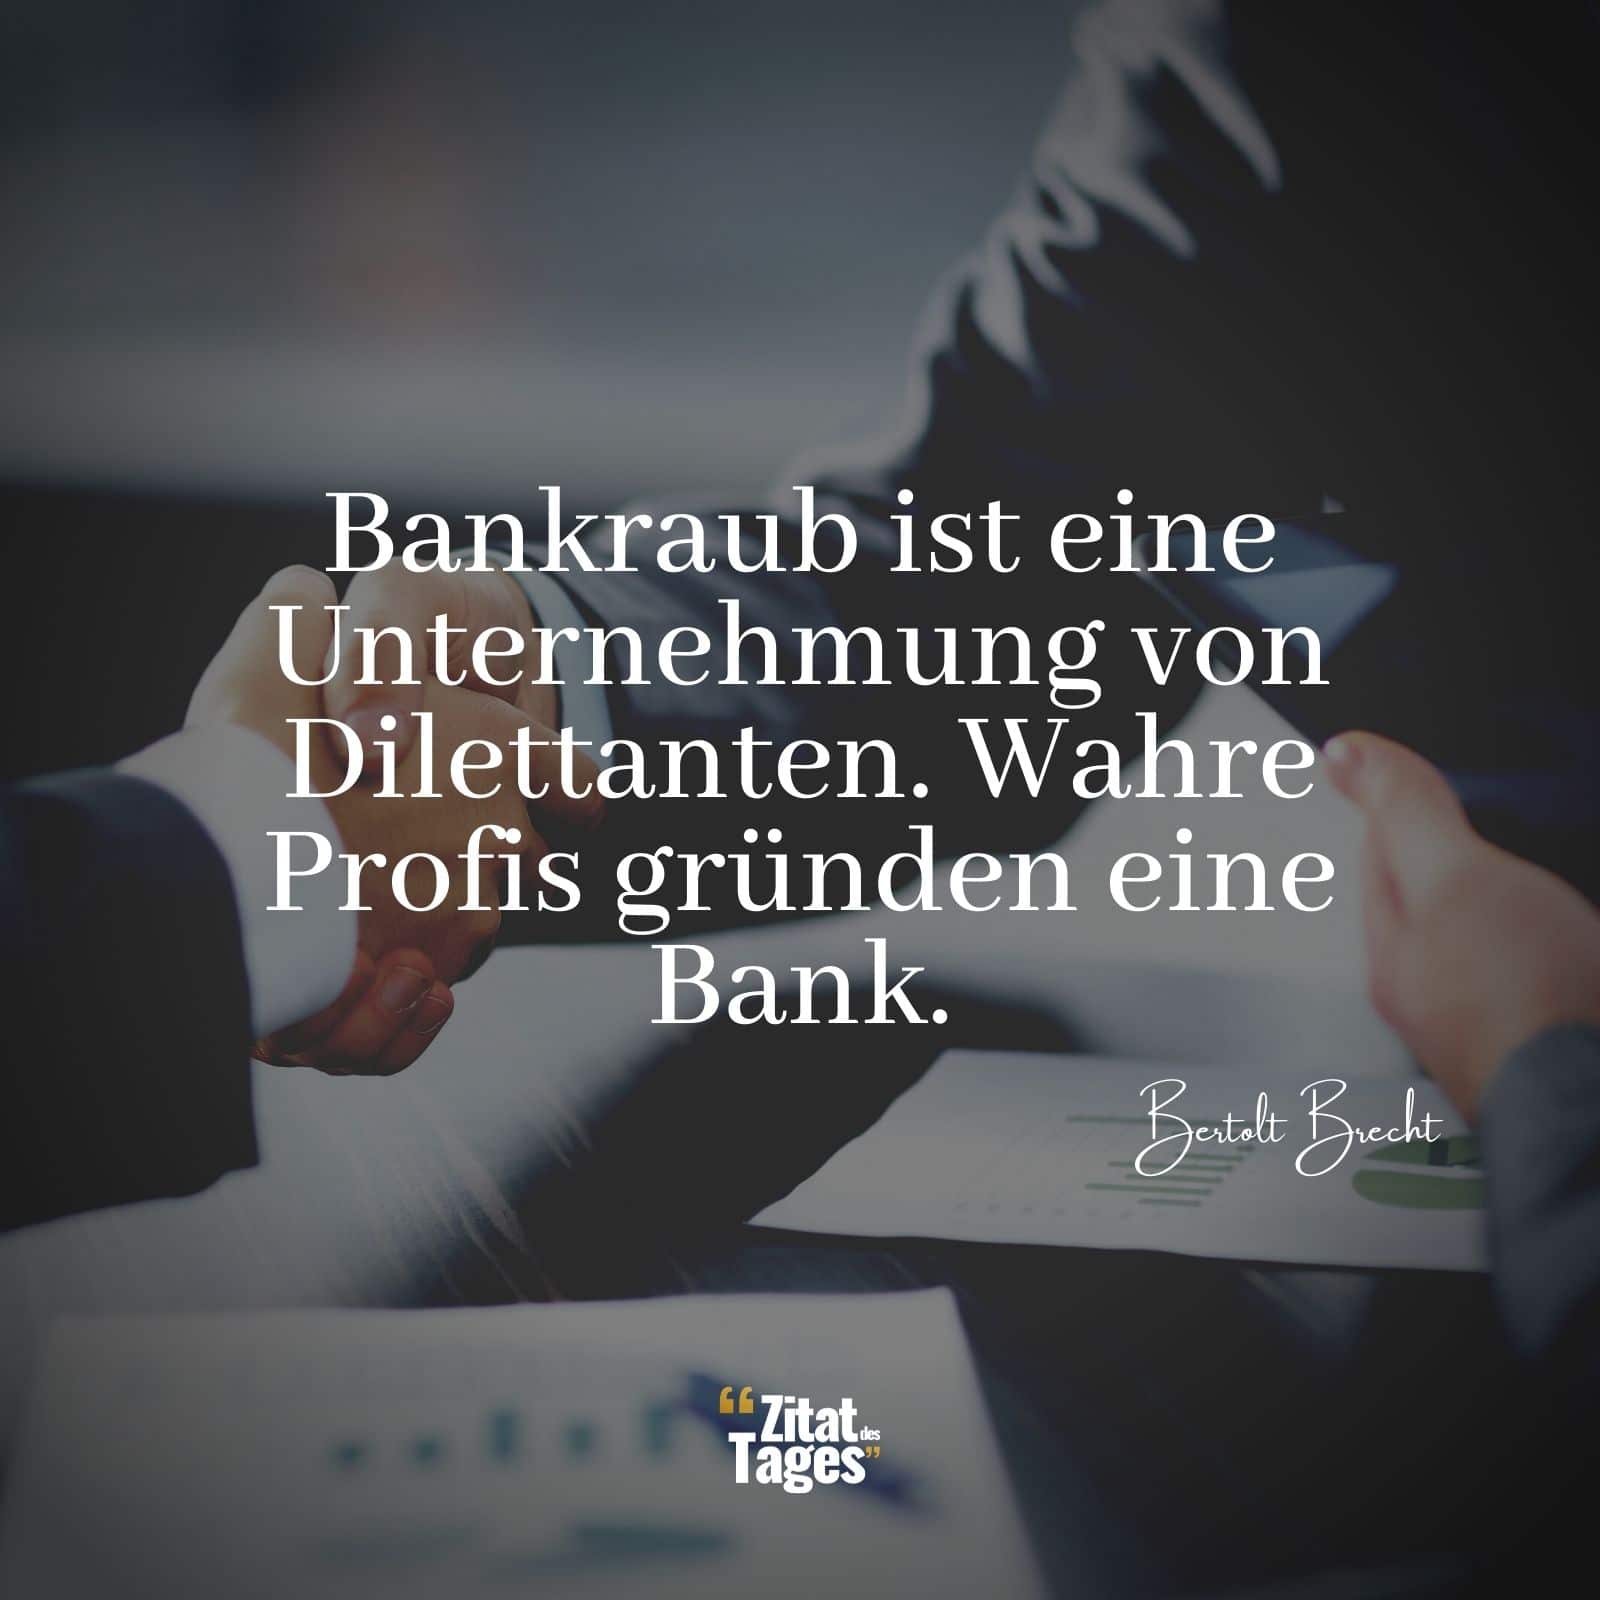 Bankraub ist eine Unternehmung von Dilettanten. Wahre Profis gründen eine Bank. - Bertolt Brecht